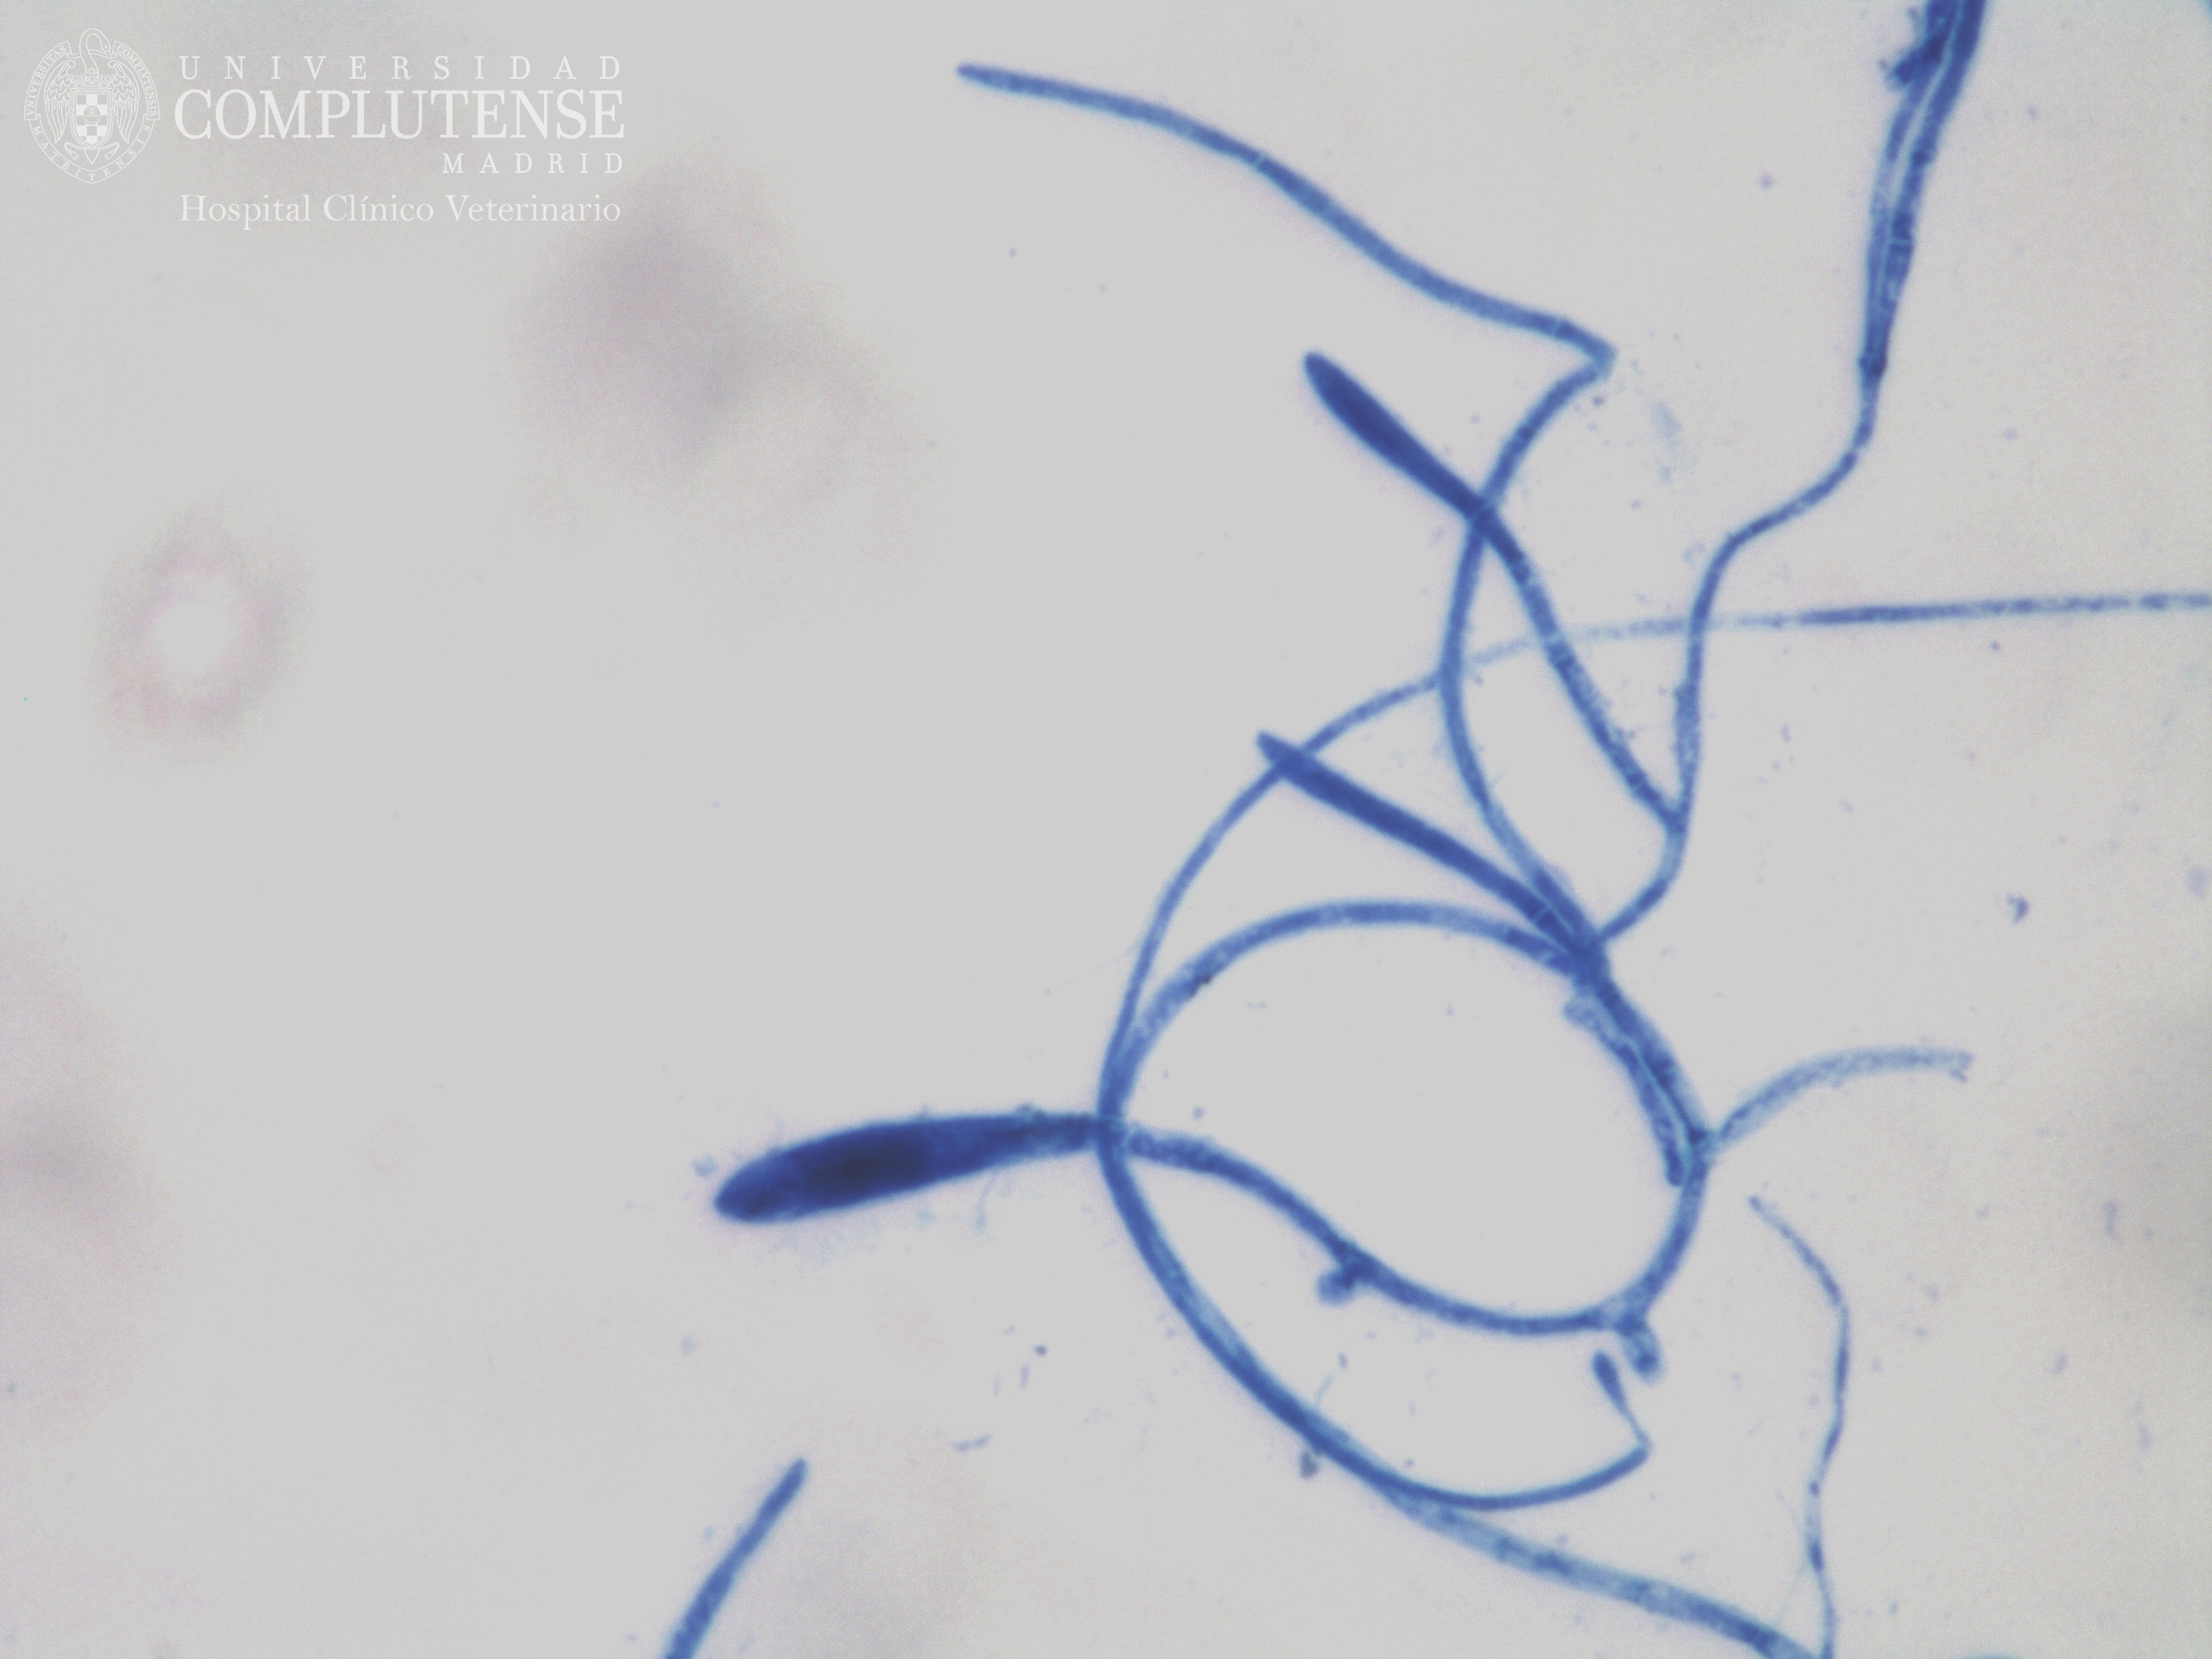  Lesión alopécica descamativa de un perro. Imagen microscópica de Microsporum canis. Tinción con Azul de Metileno.